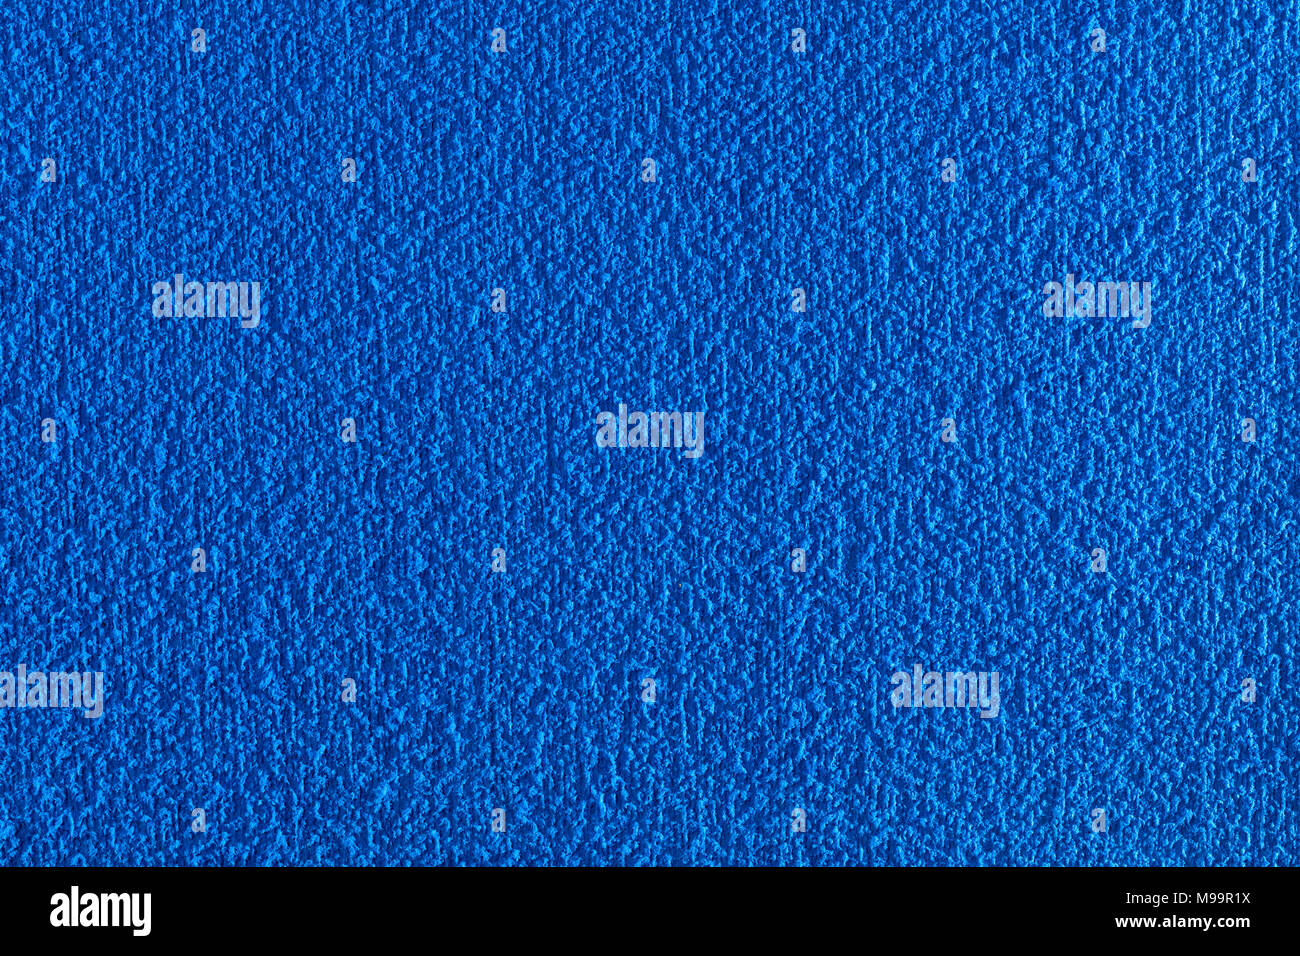 Bleu tendre et rugueux texture en caoutchouc, la macro photographie avec une haute résolution et de la taille Banque D'Images